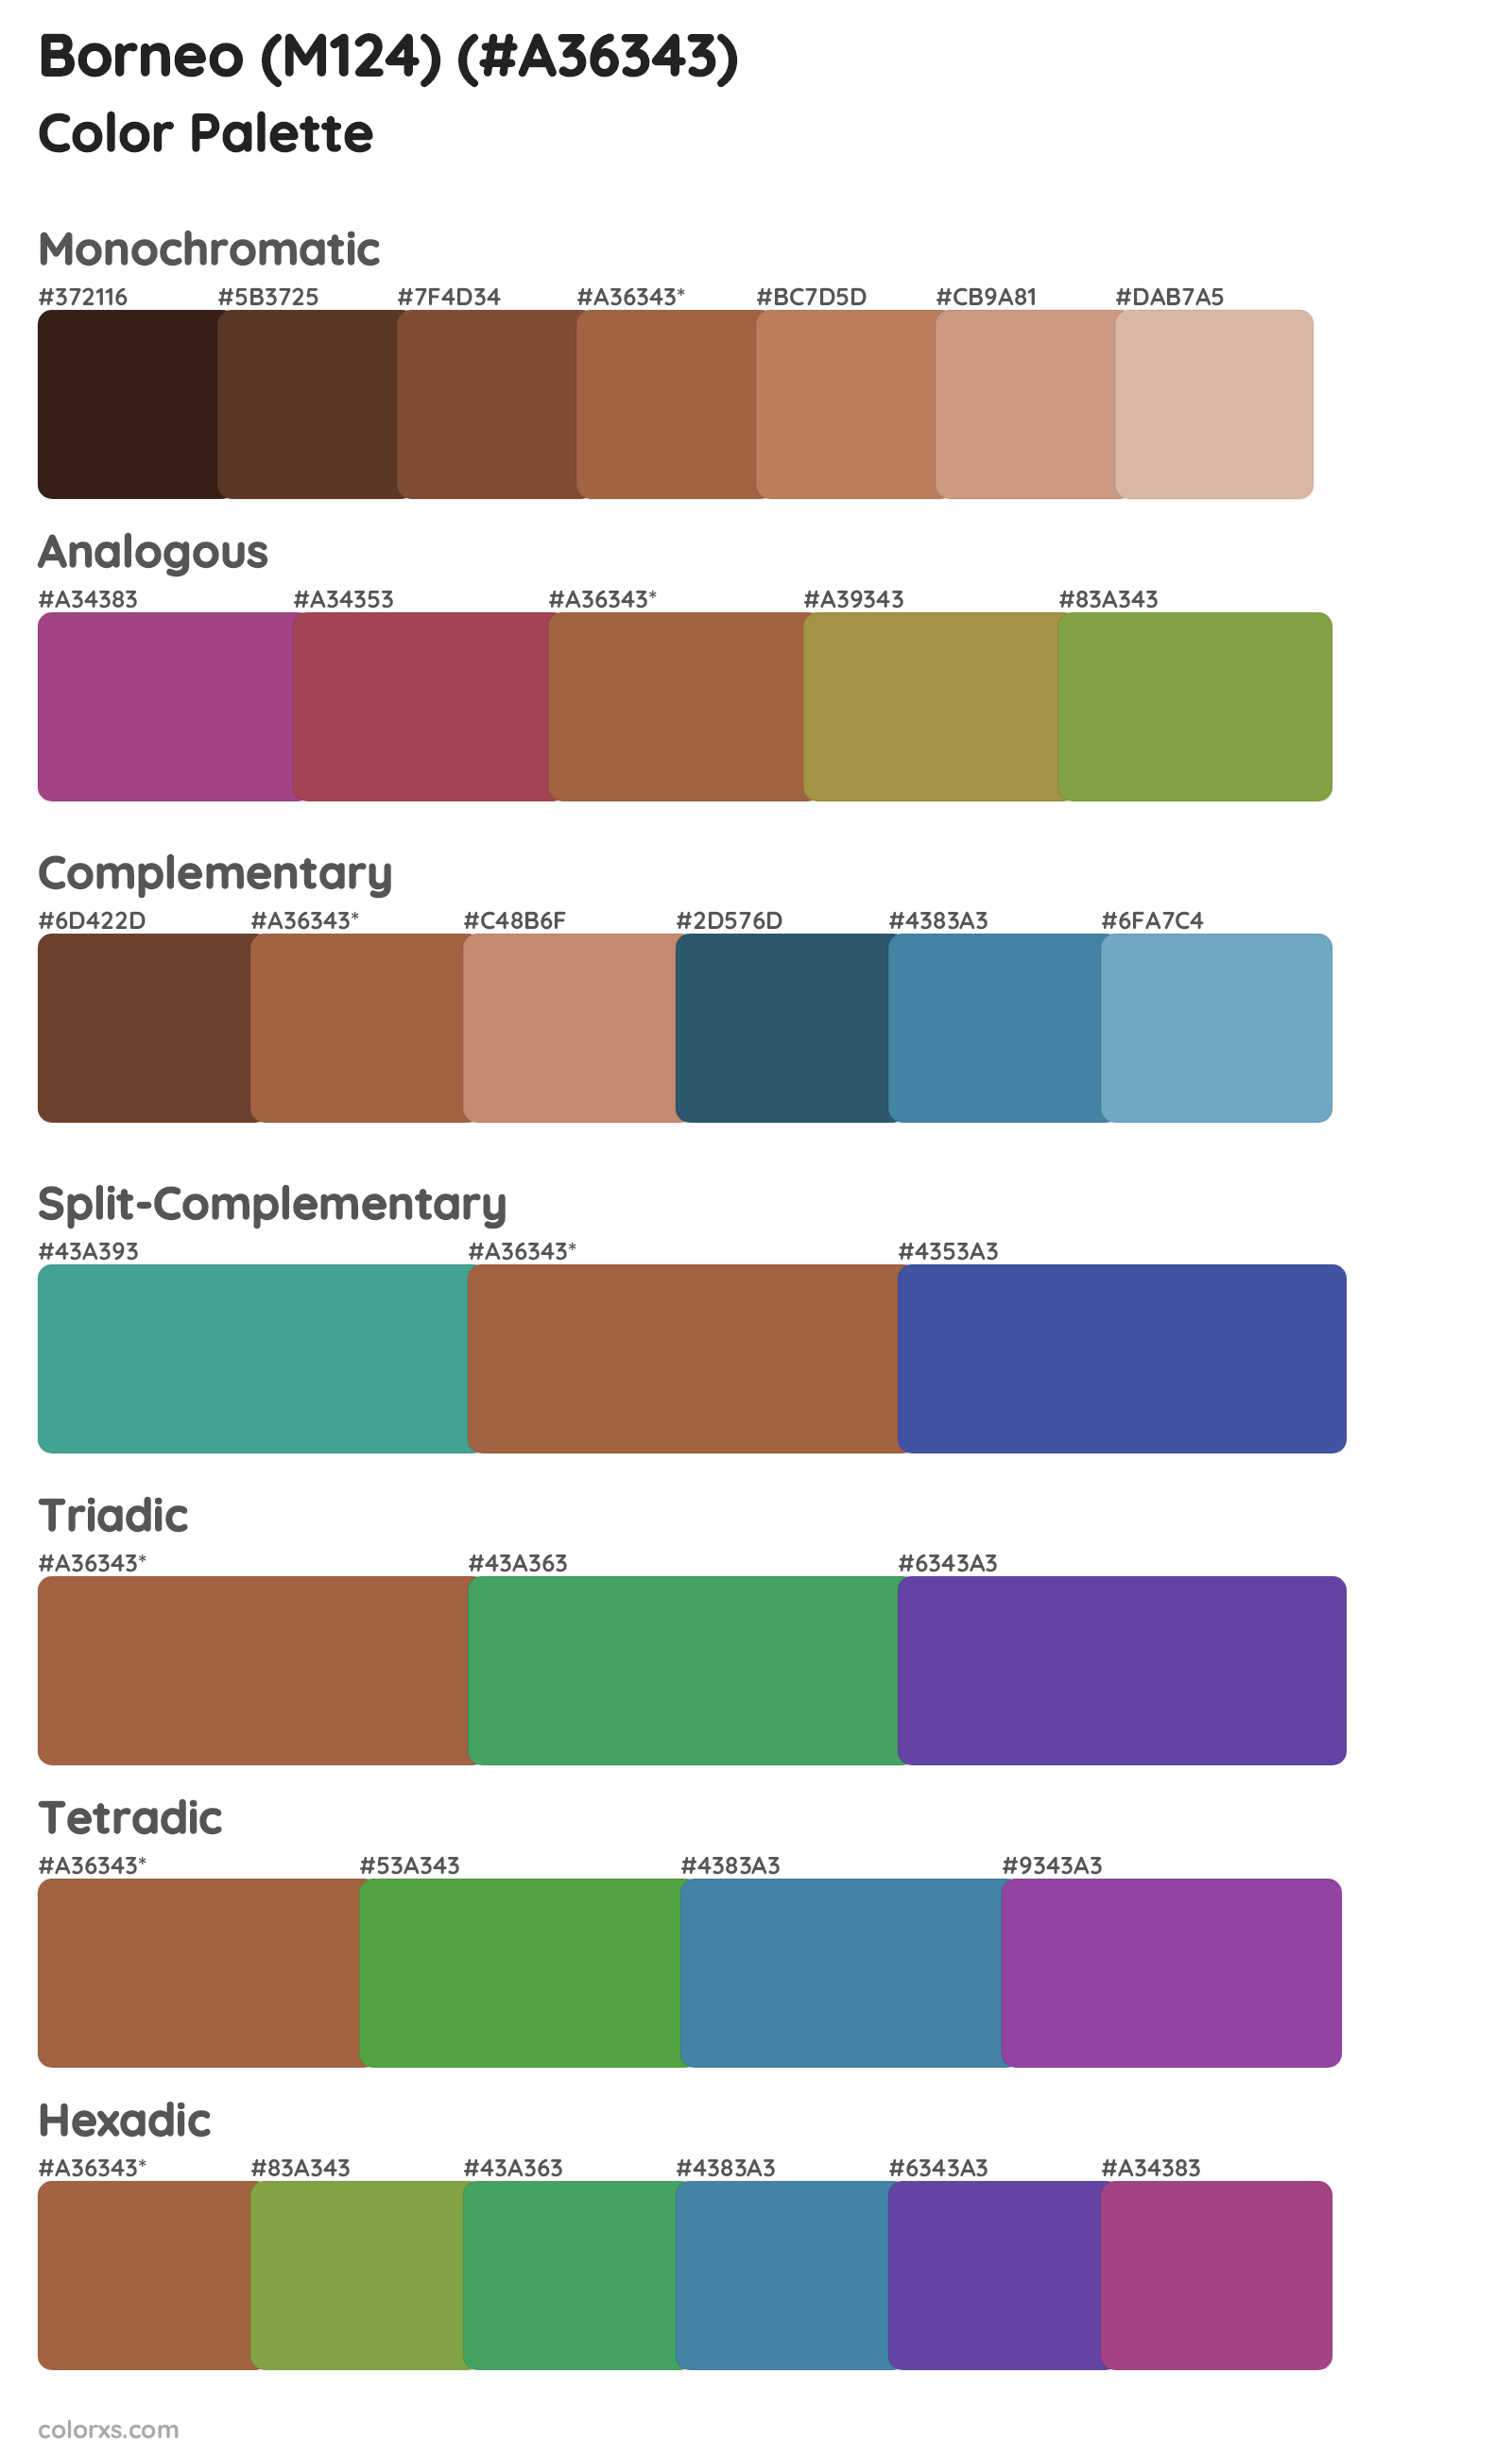 Borneo (M124) Color Scheme Palettes